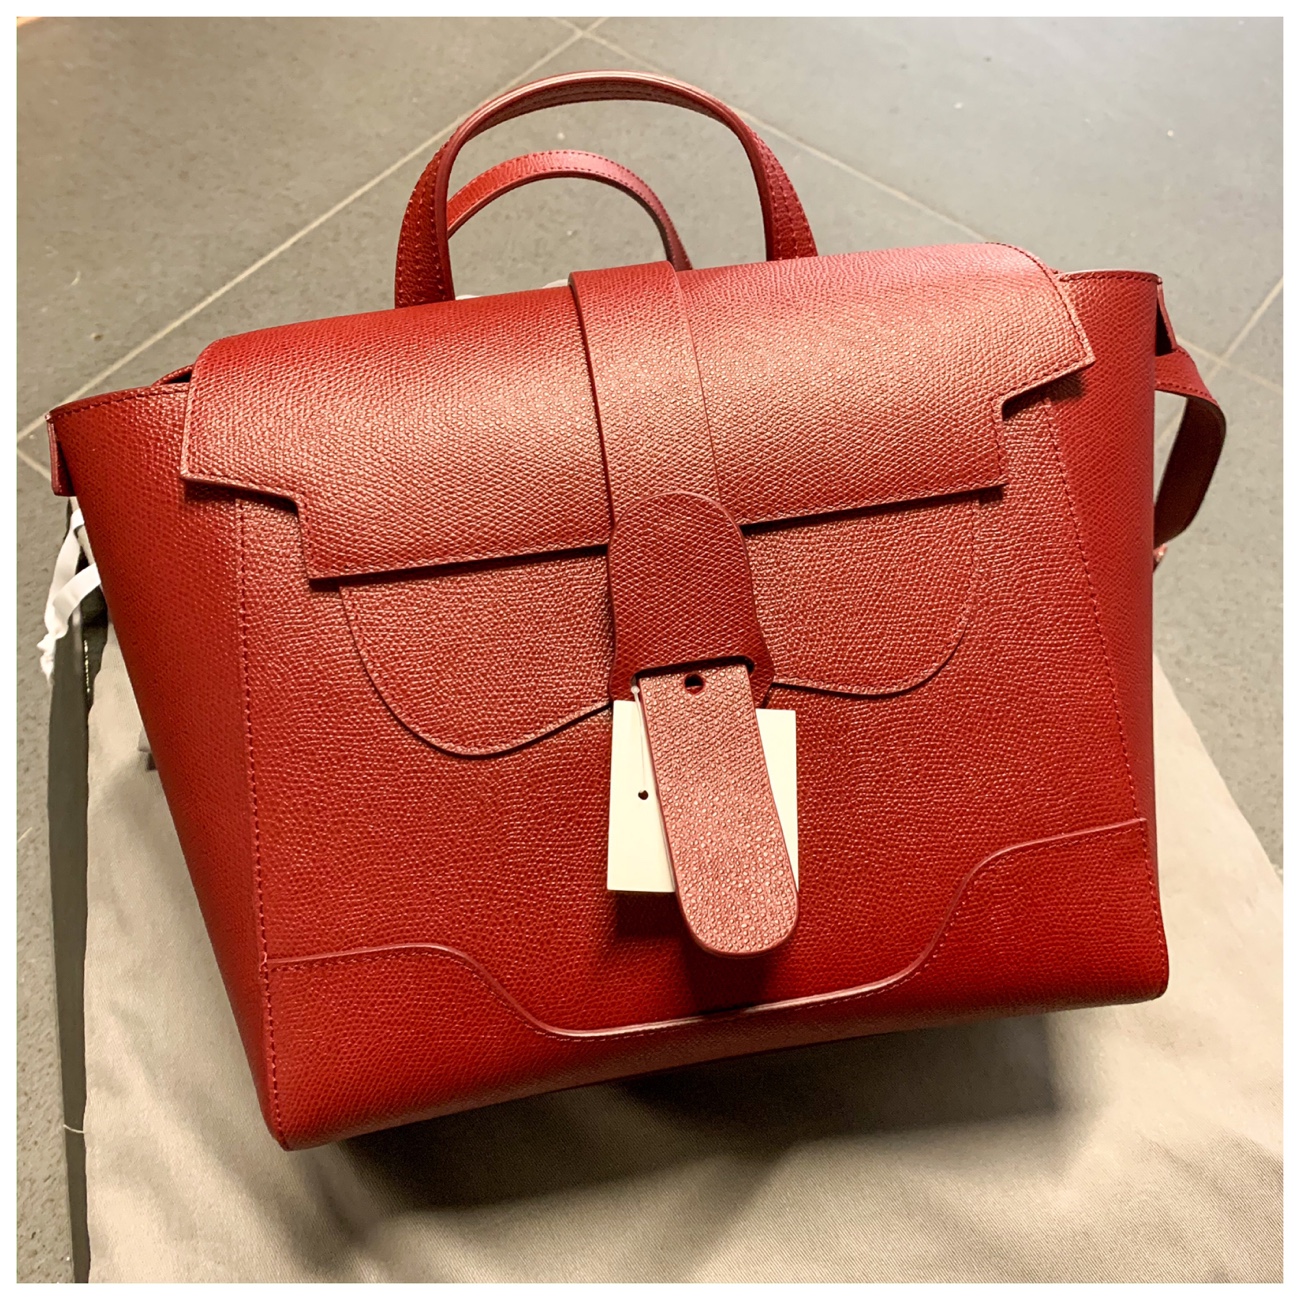 Senreve Aria Élevée Belt Bag, Pebbled in Red